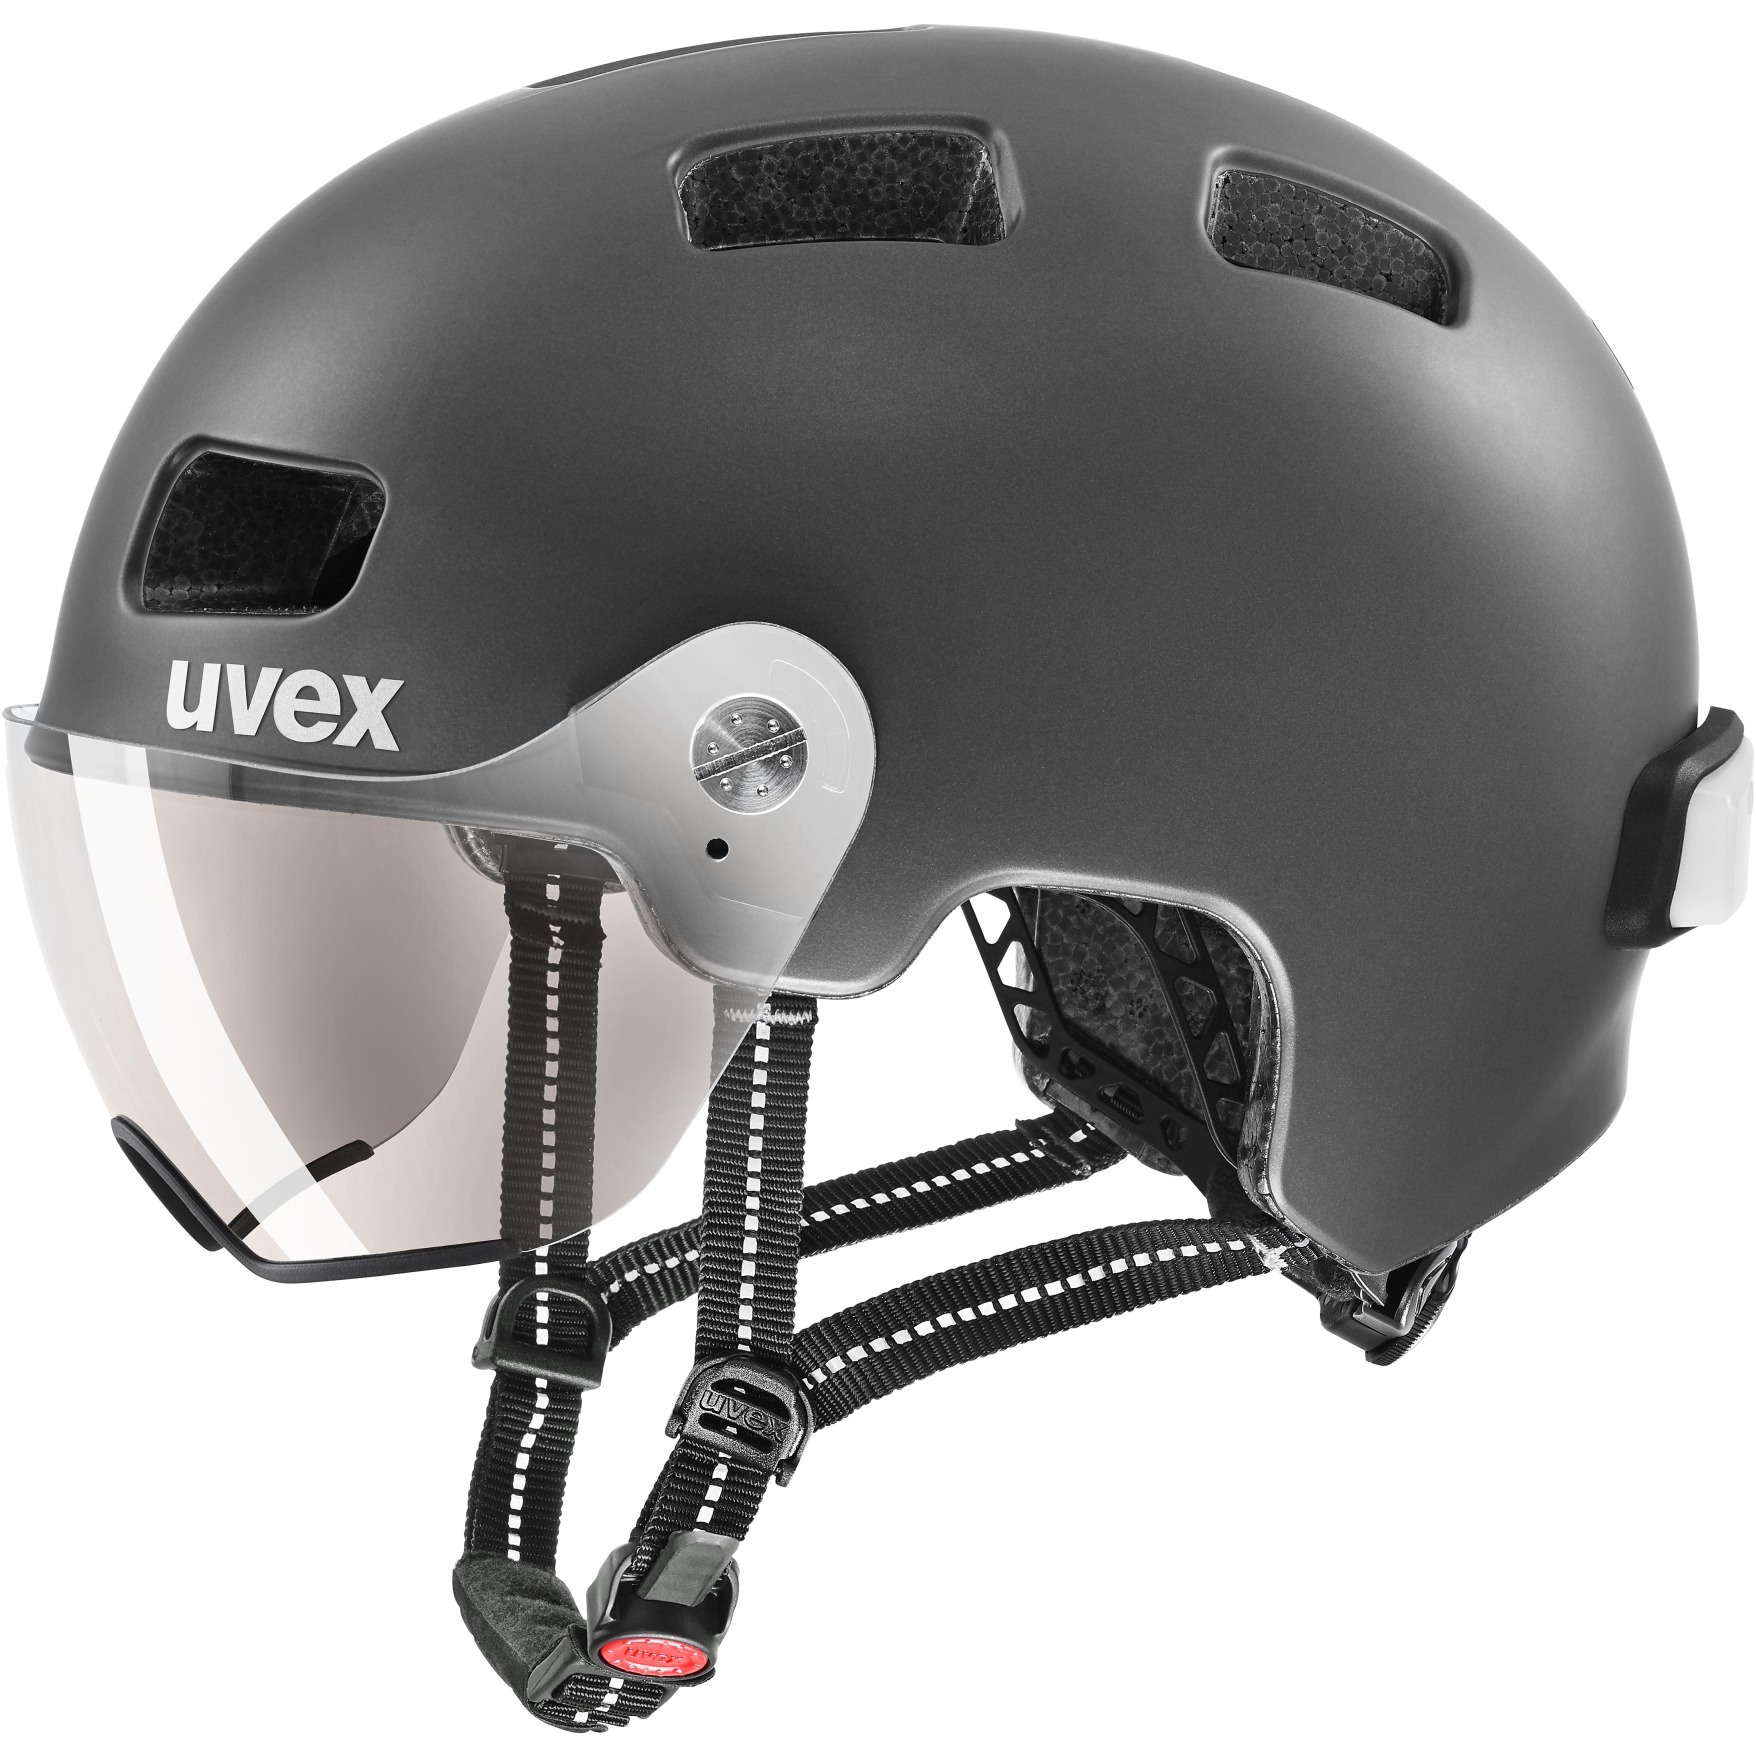 Produktbild von Uvex rush visor Helm - dark silver mat